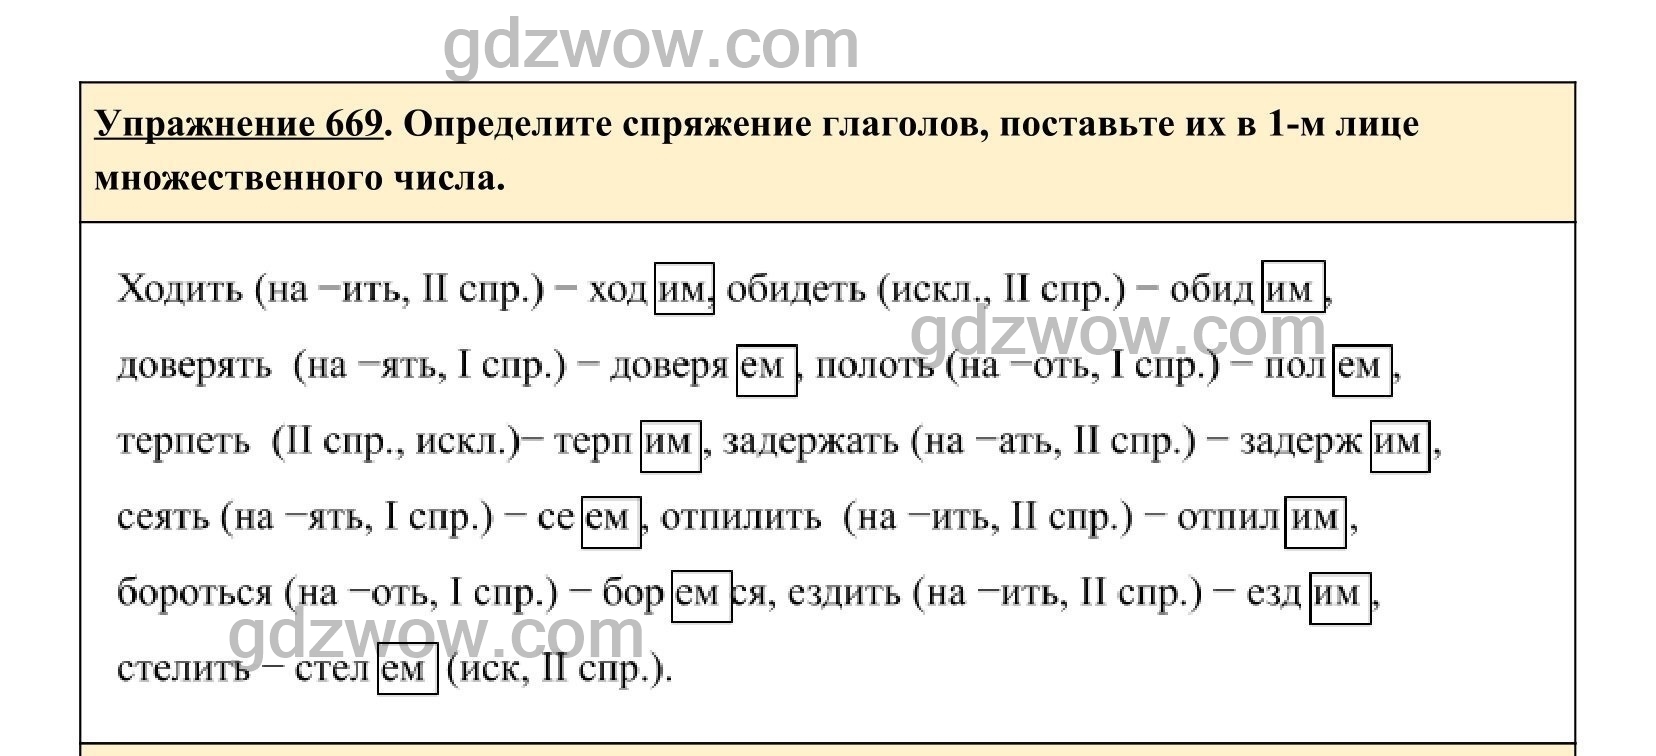 Упр 712 русский язык 5 класс